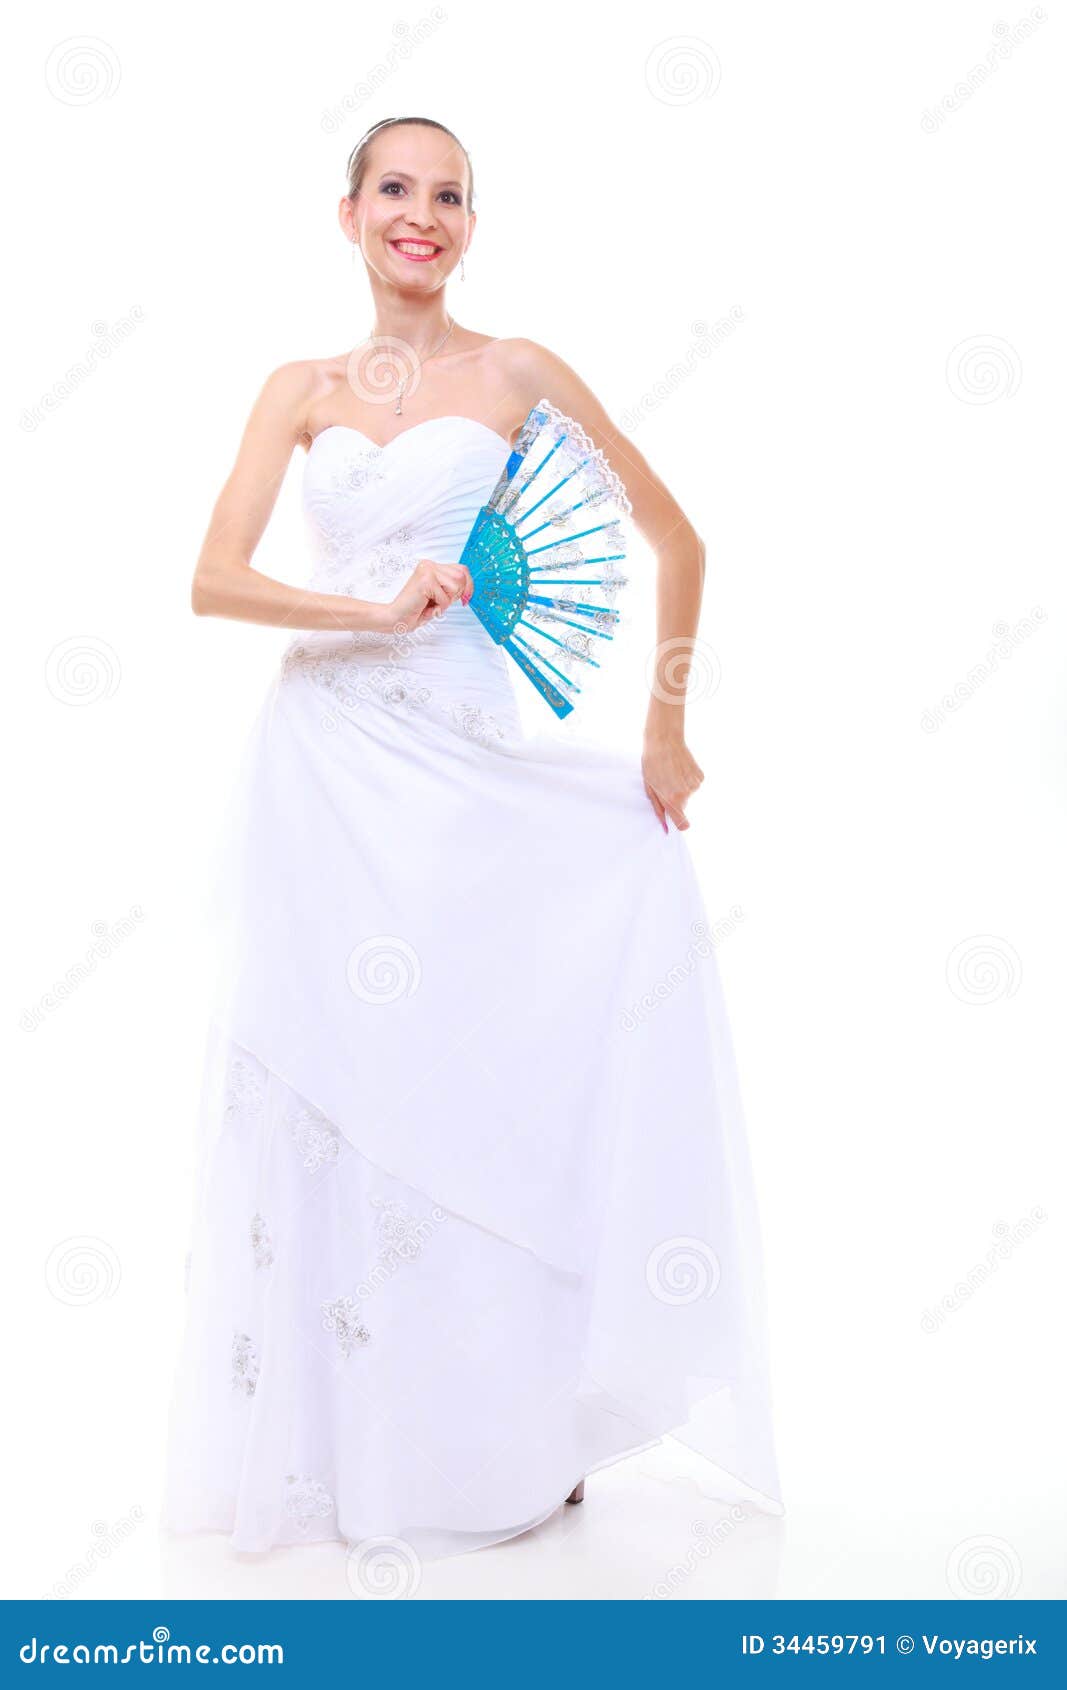 vestido branco escrito fé